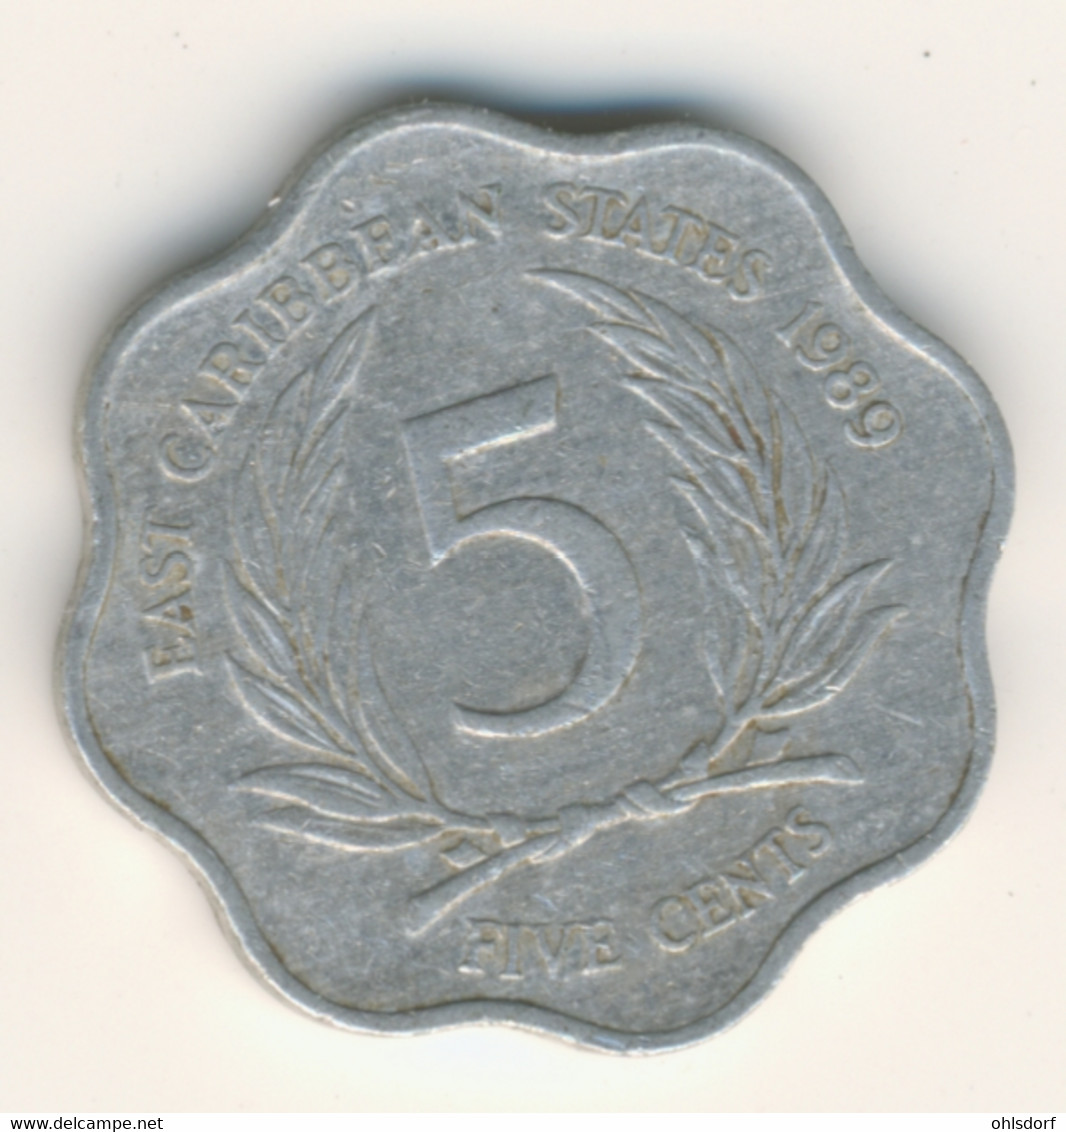 EAST CARIBBEAN STATES 1989: 5 Cents, KM 12 - Caraïbes Orientales (Etats Des)